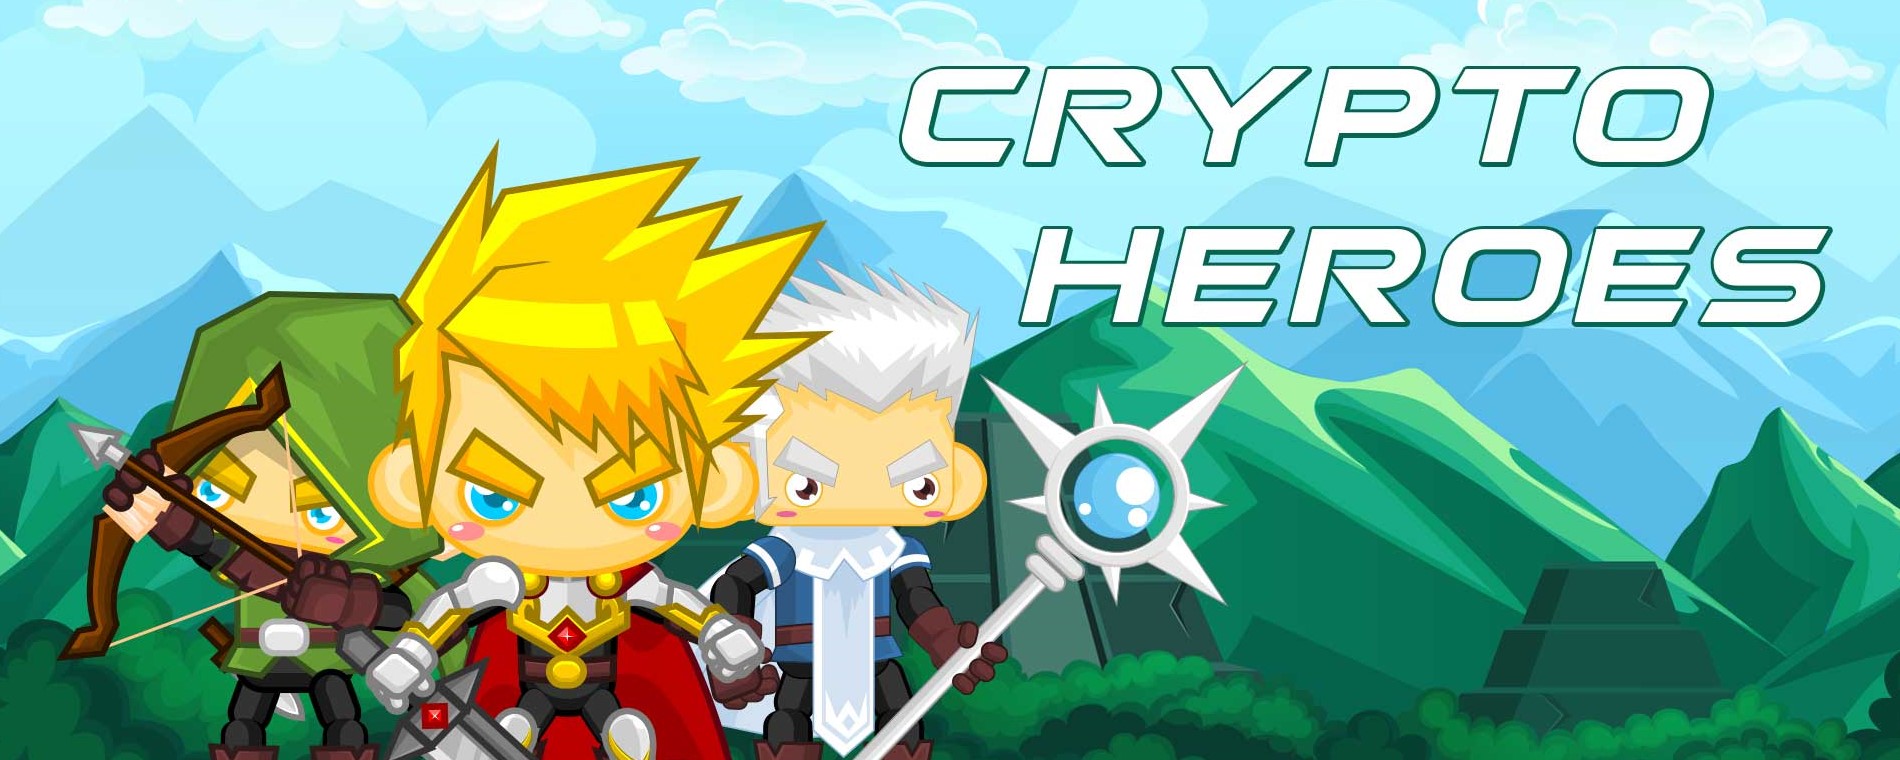 where can i buy hero crypto